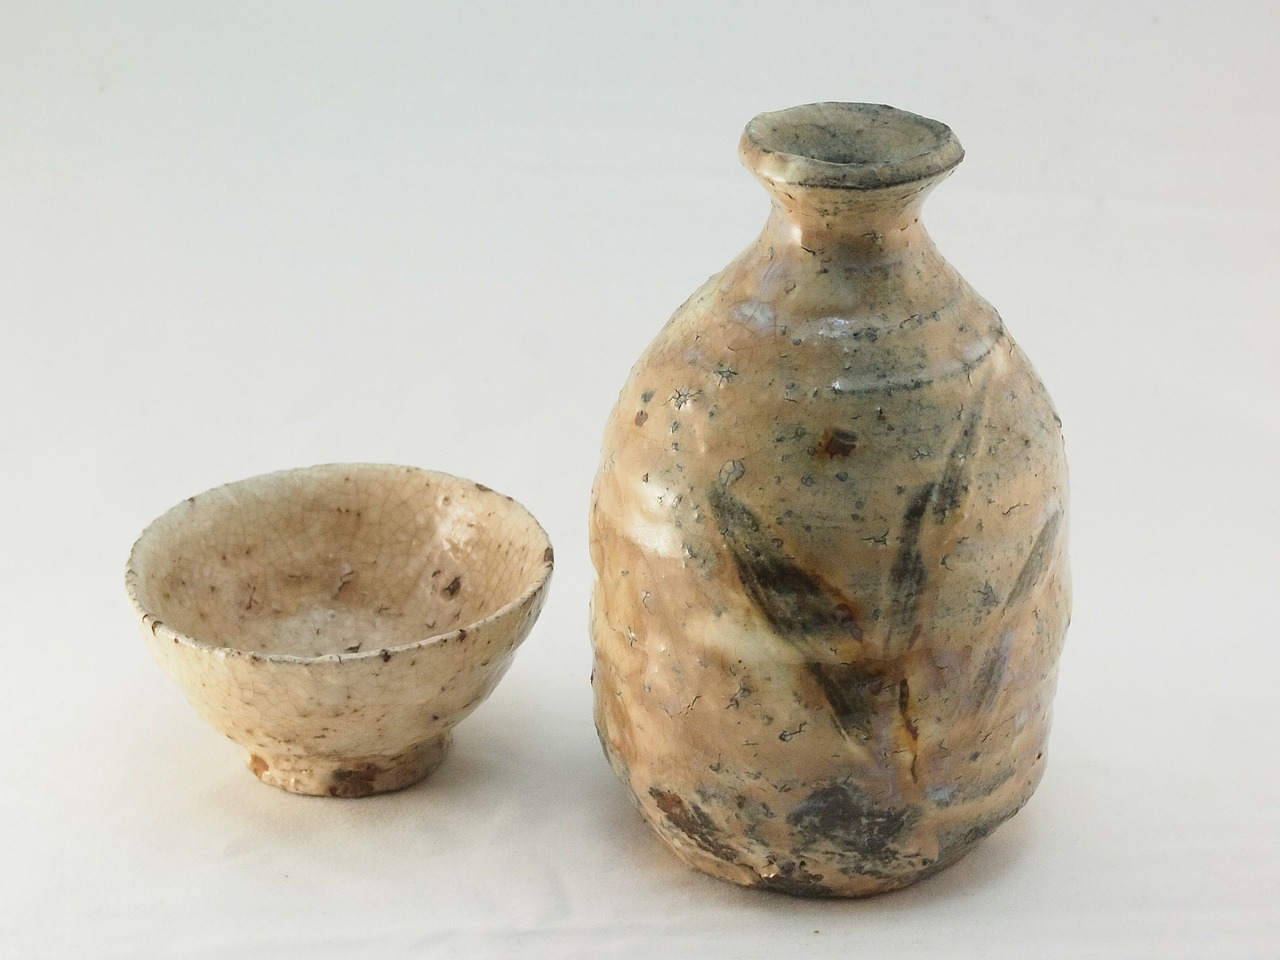 pottery sake cup sake bottle free photo